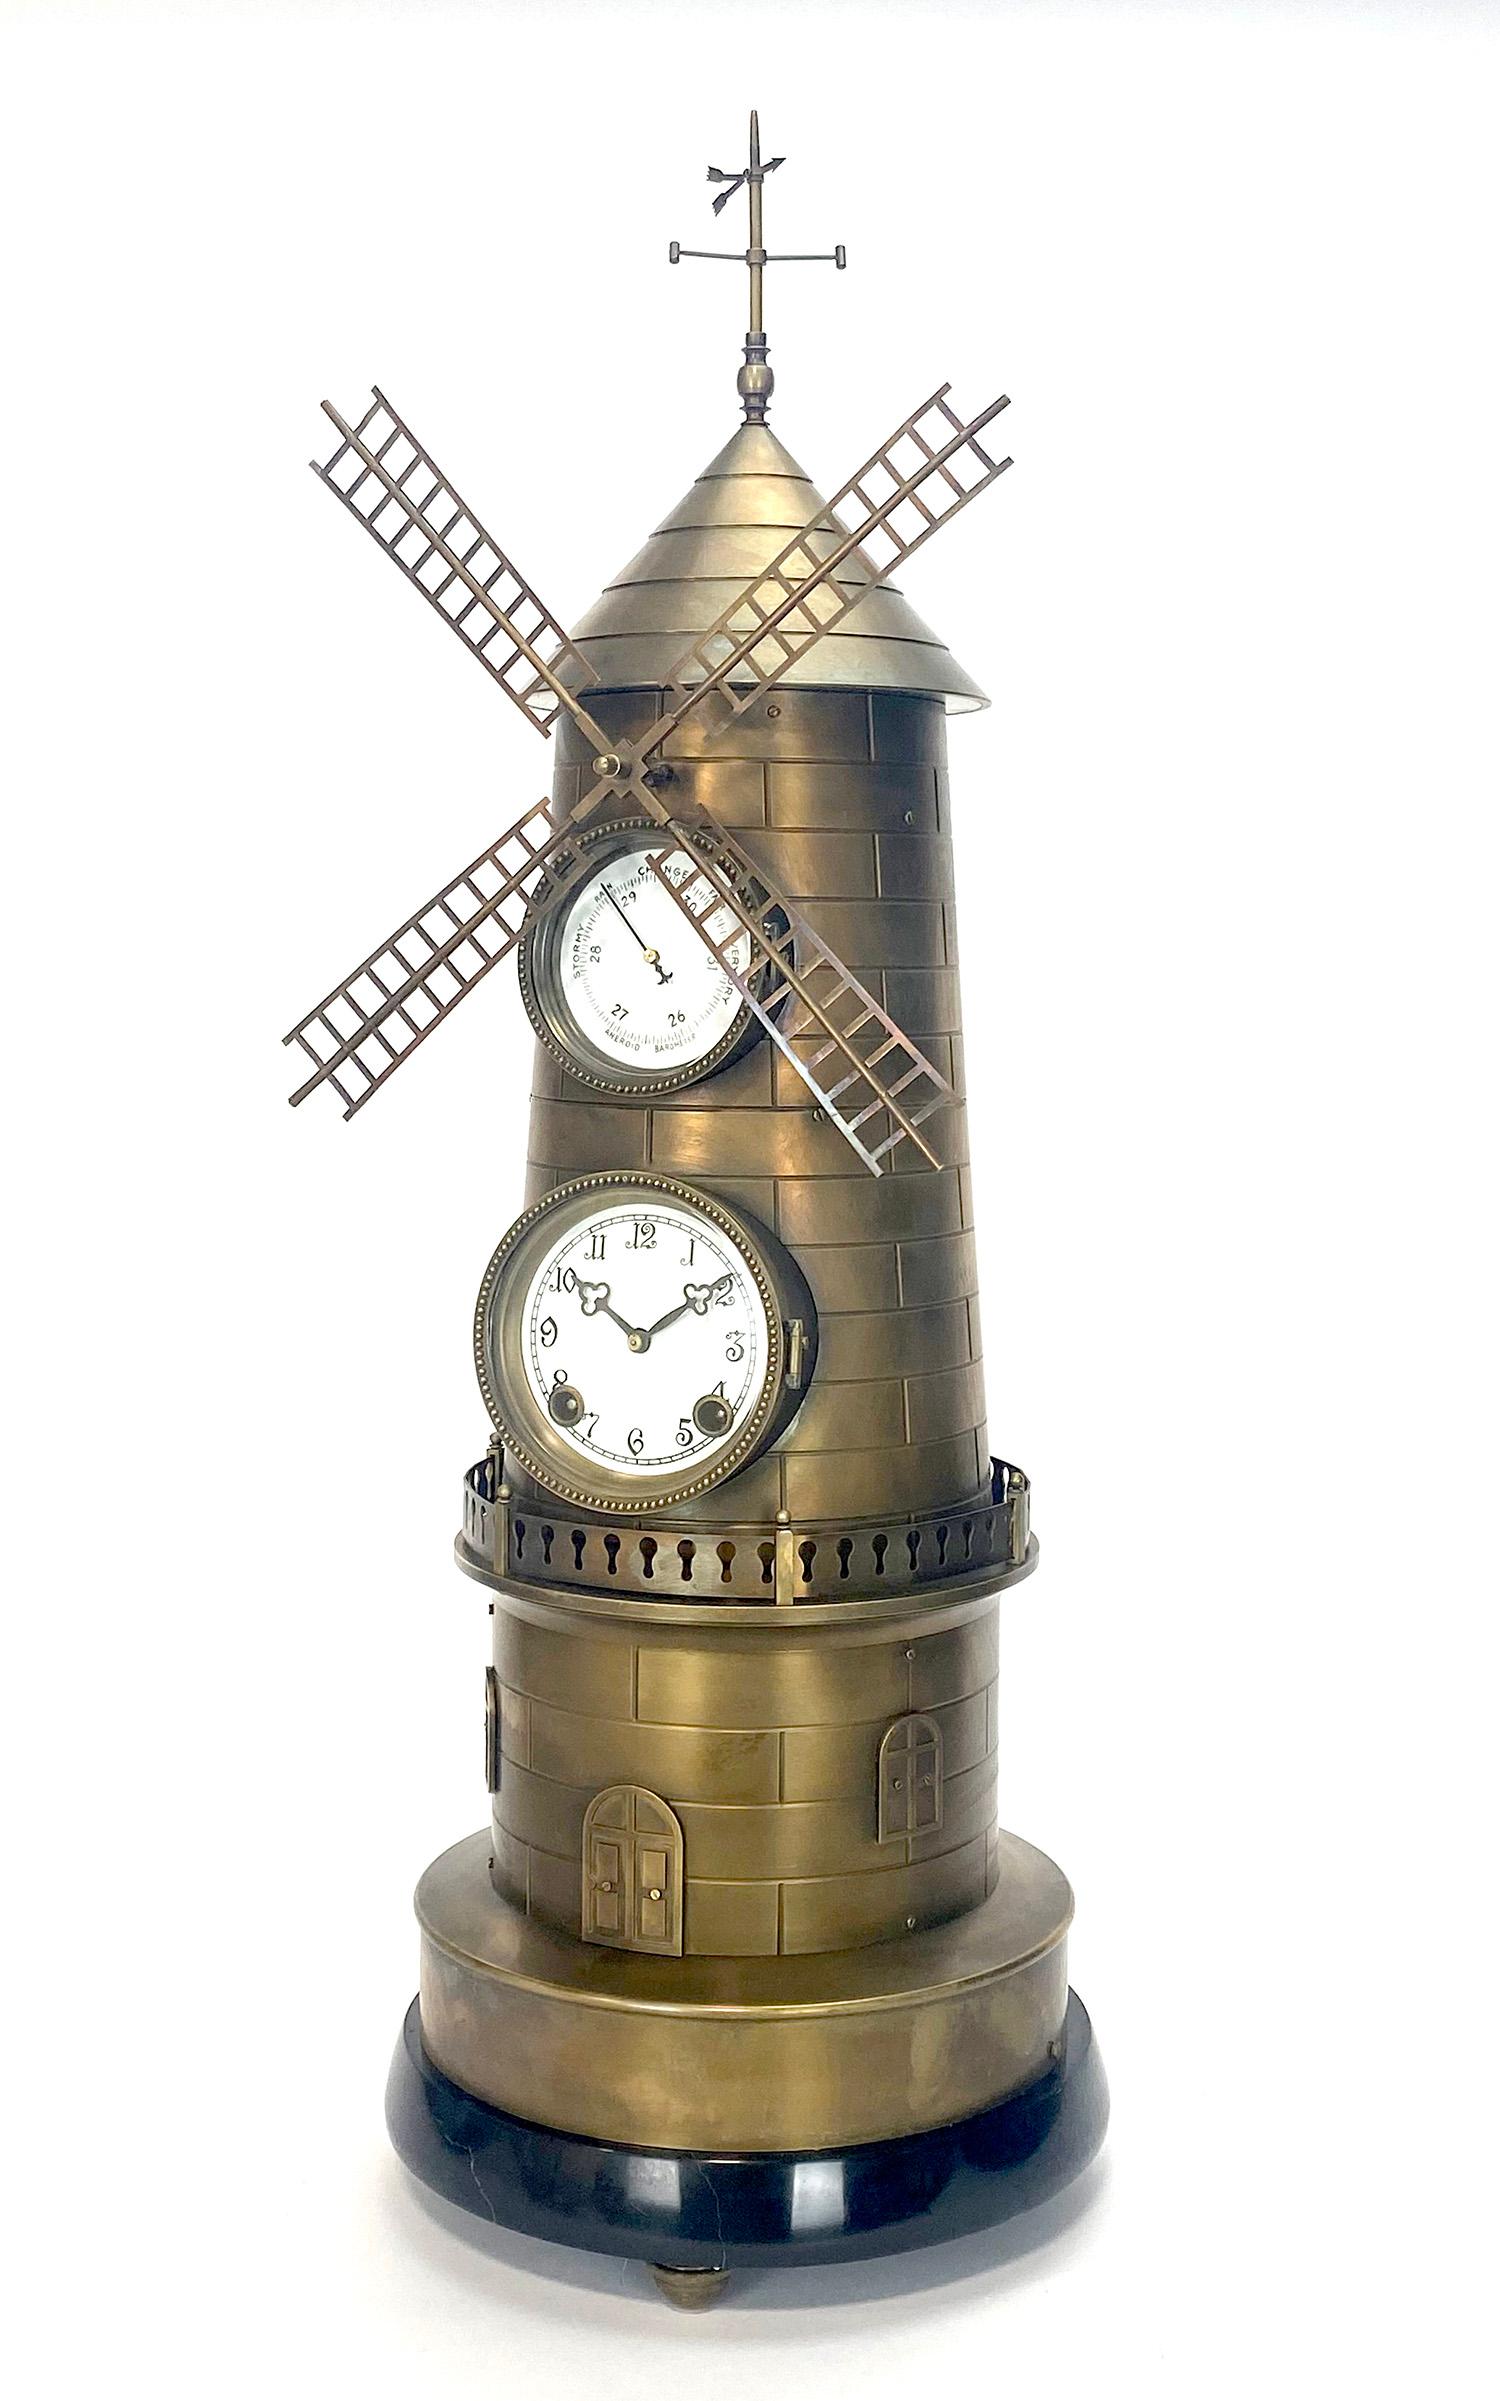 Grande horloge industrielle à moulin à vent automate en laiton, 8 jours, de style français, avec base en marbre.

Nous avons ici un magnifique exemple de la série industrielle populaire dans l'horlogerie française. Pendant que l'horloge sonne, le